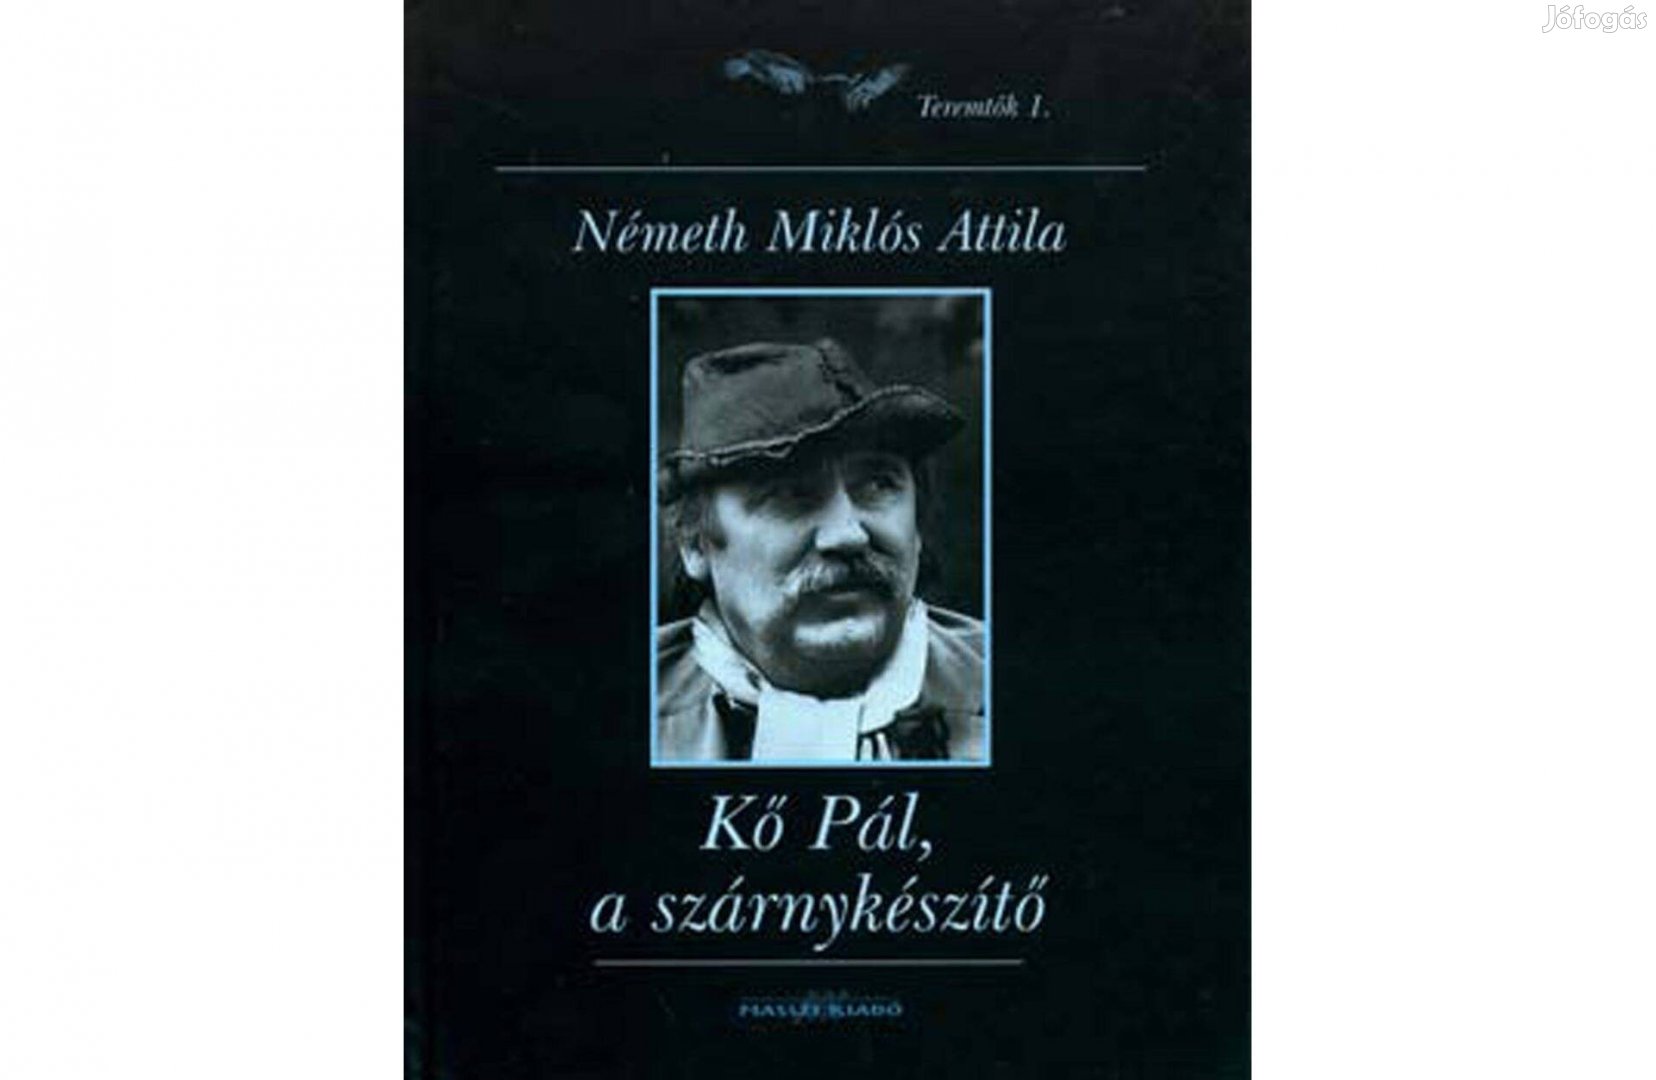 Kő Pál, Kossuth-díjas szobrász, a "Szárnykészítő Németh Miklós Attila